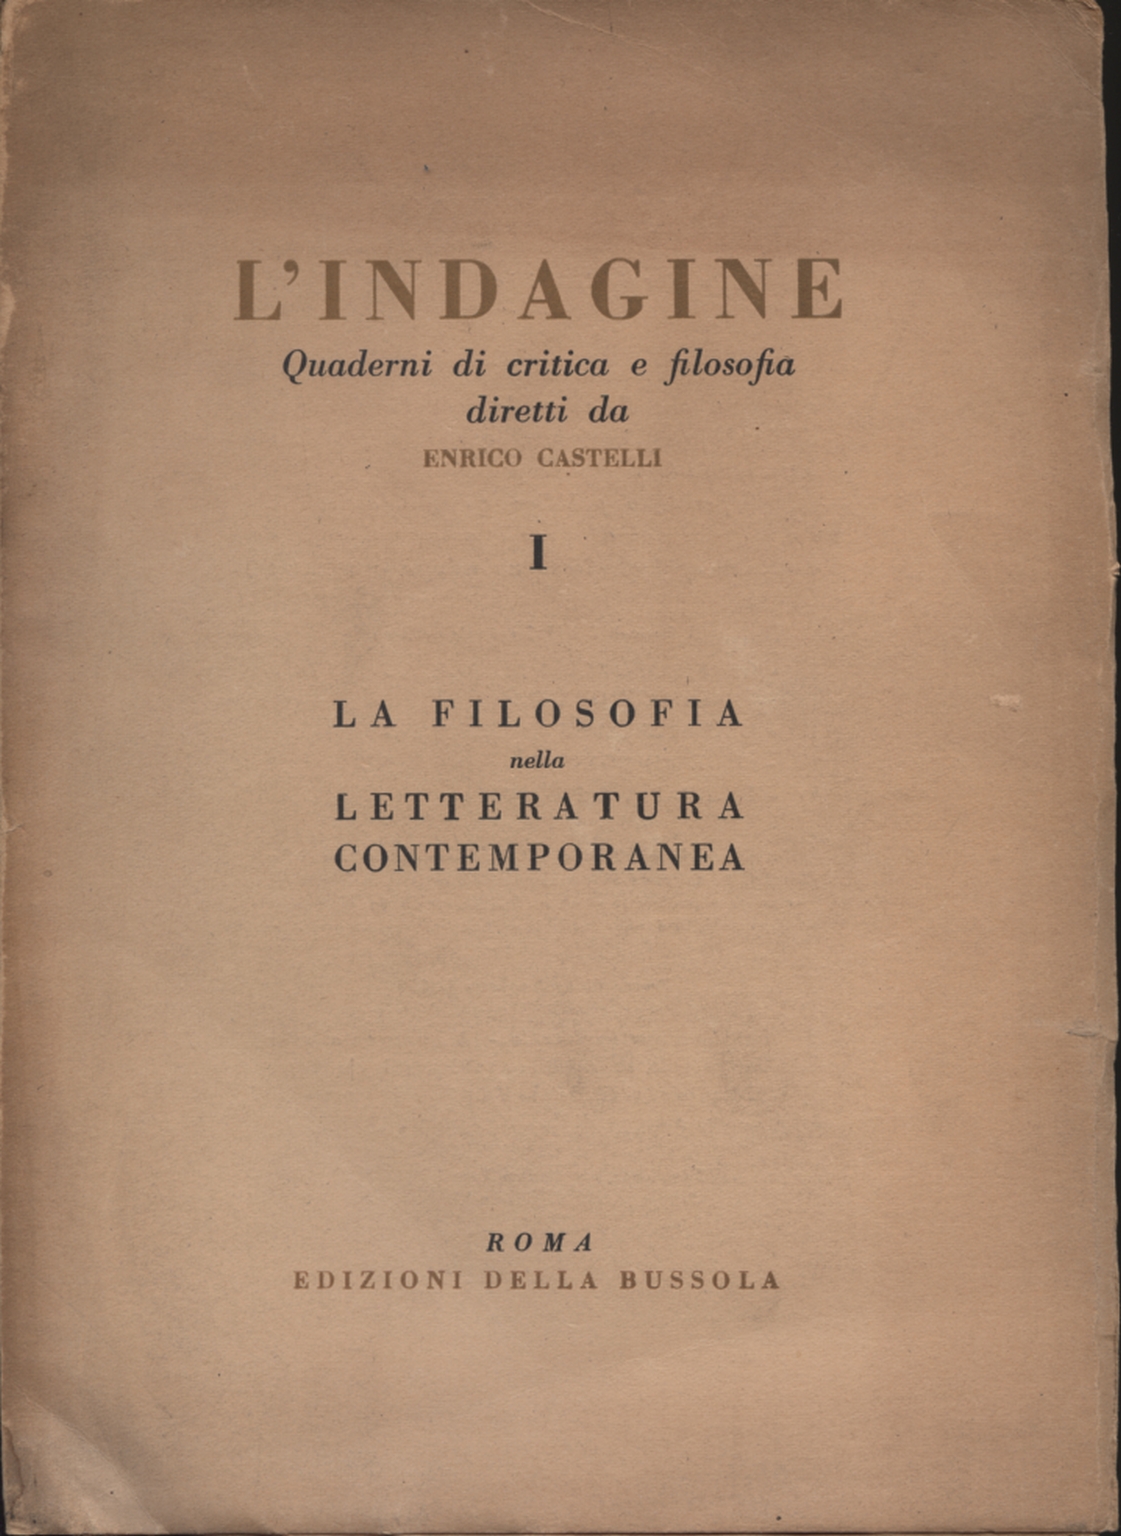 L'indagine. Quaderni di critica e filosofia 1, AA.VV.